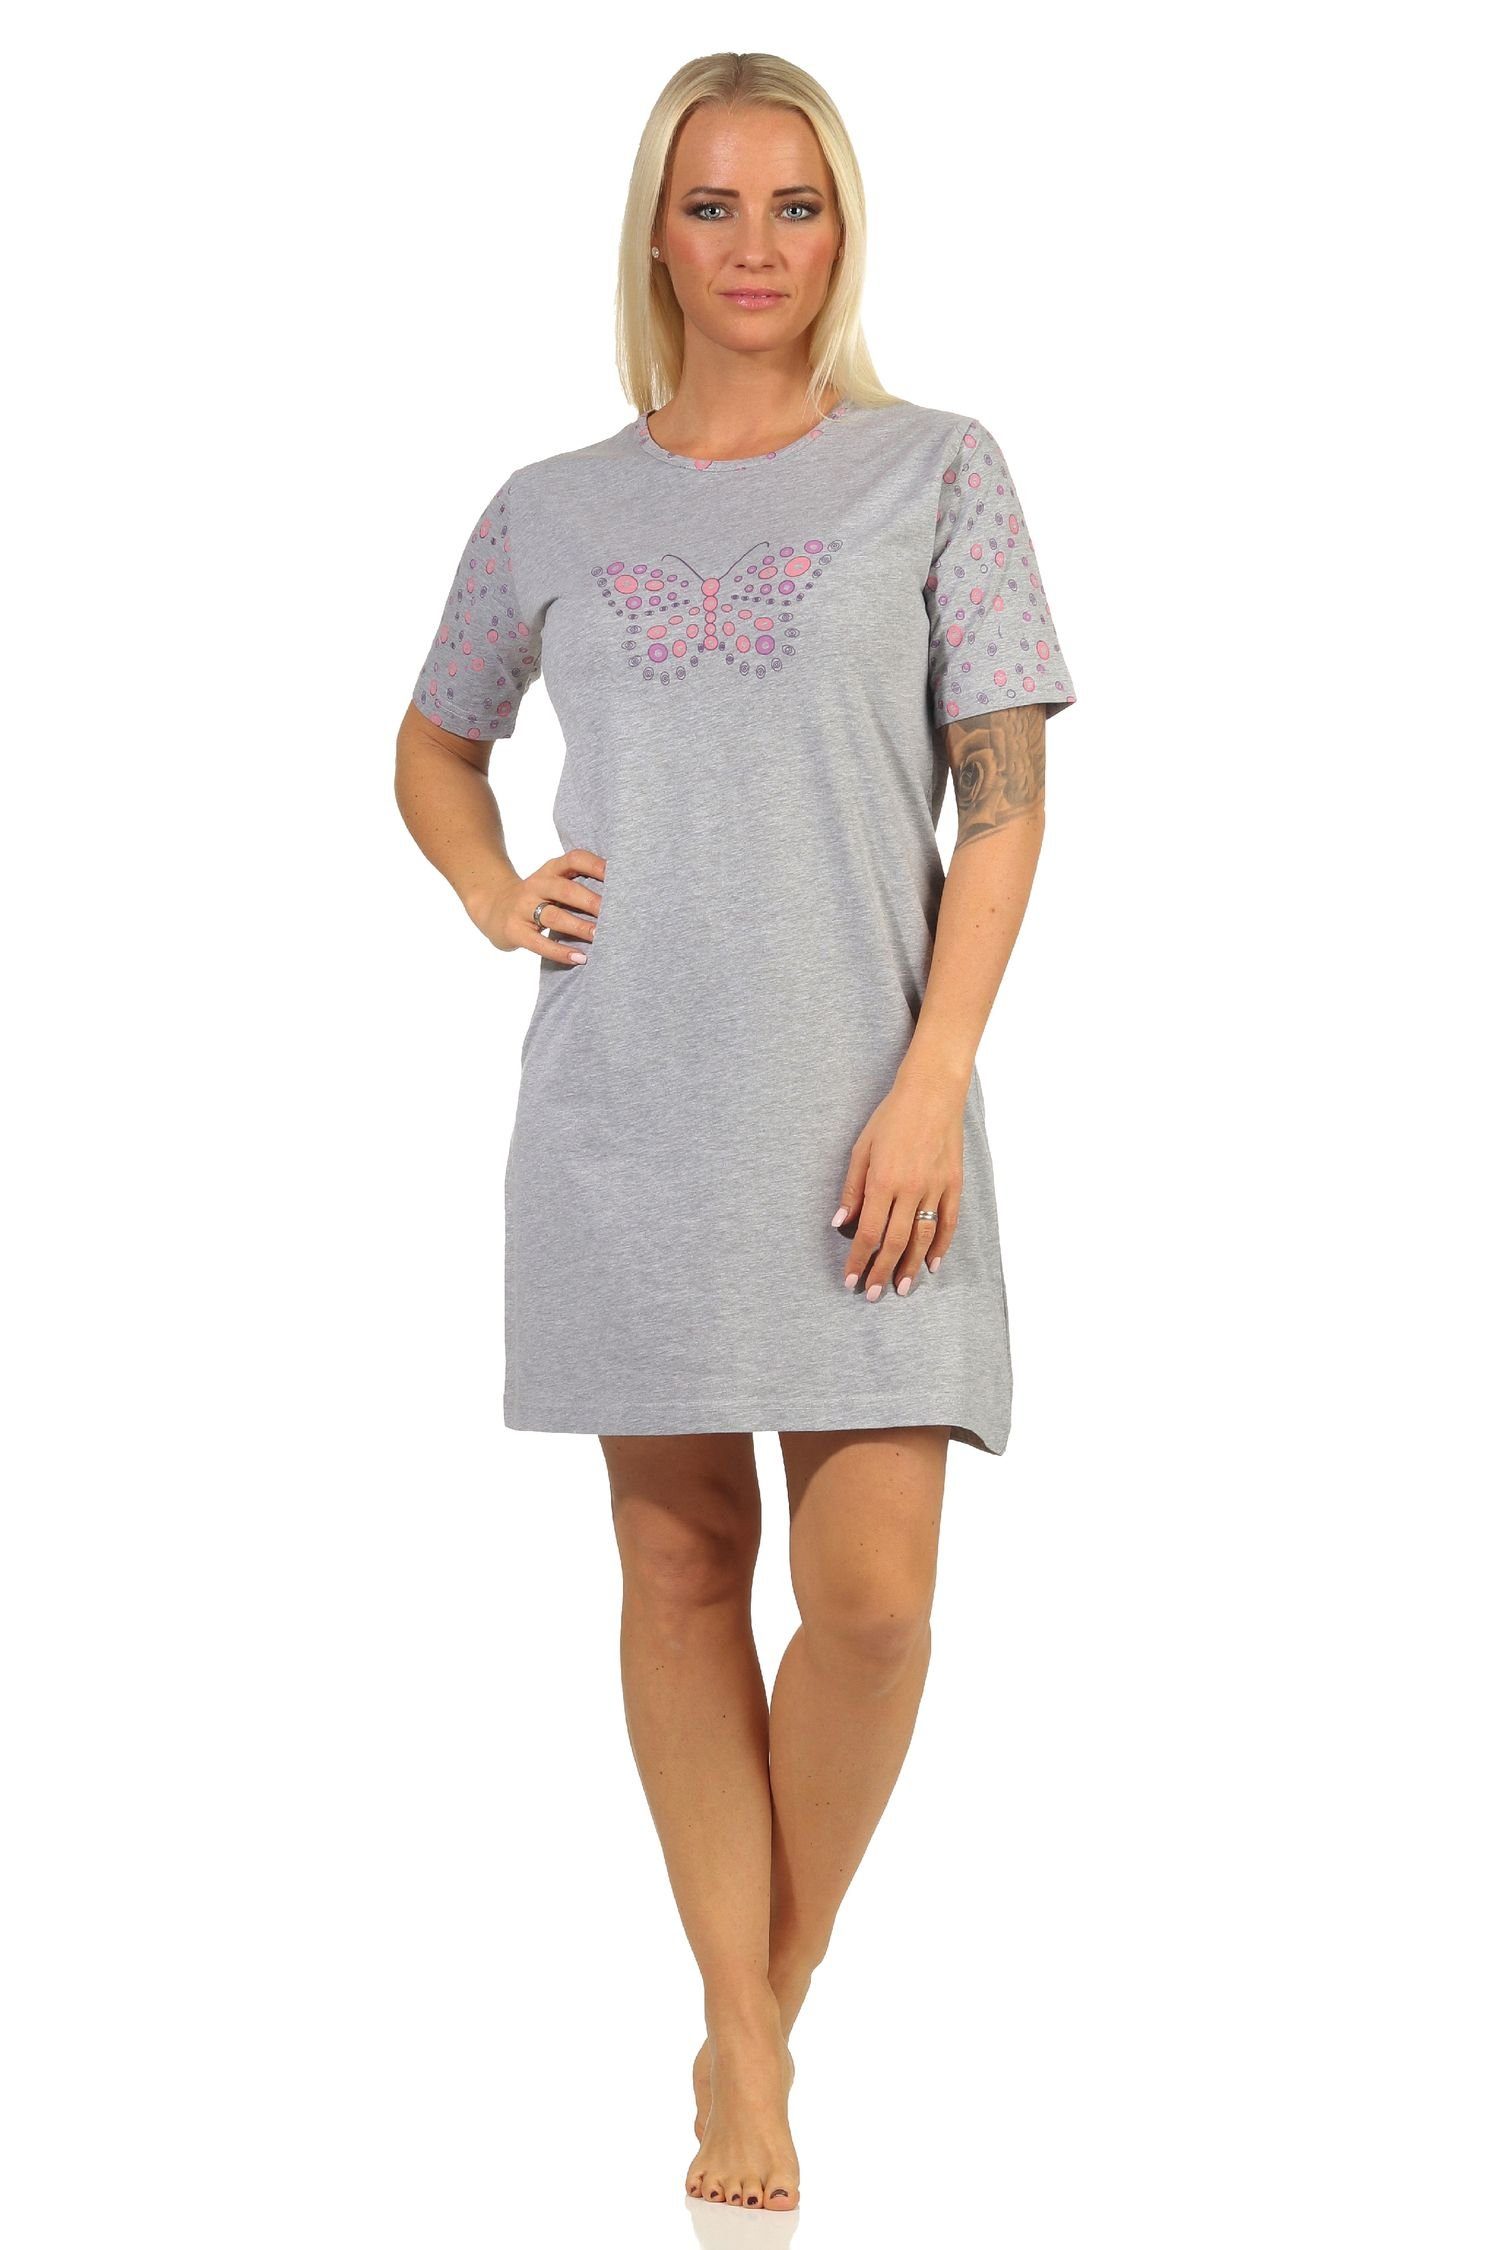 RELAX by Normann Nachthemd Damen kurzarm Nachthemd mit Schmetterling als Motiv - 112 10 714 pink